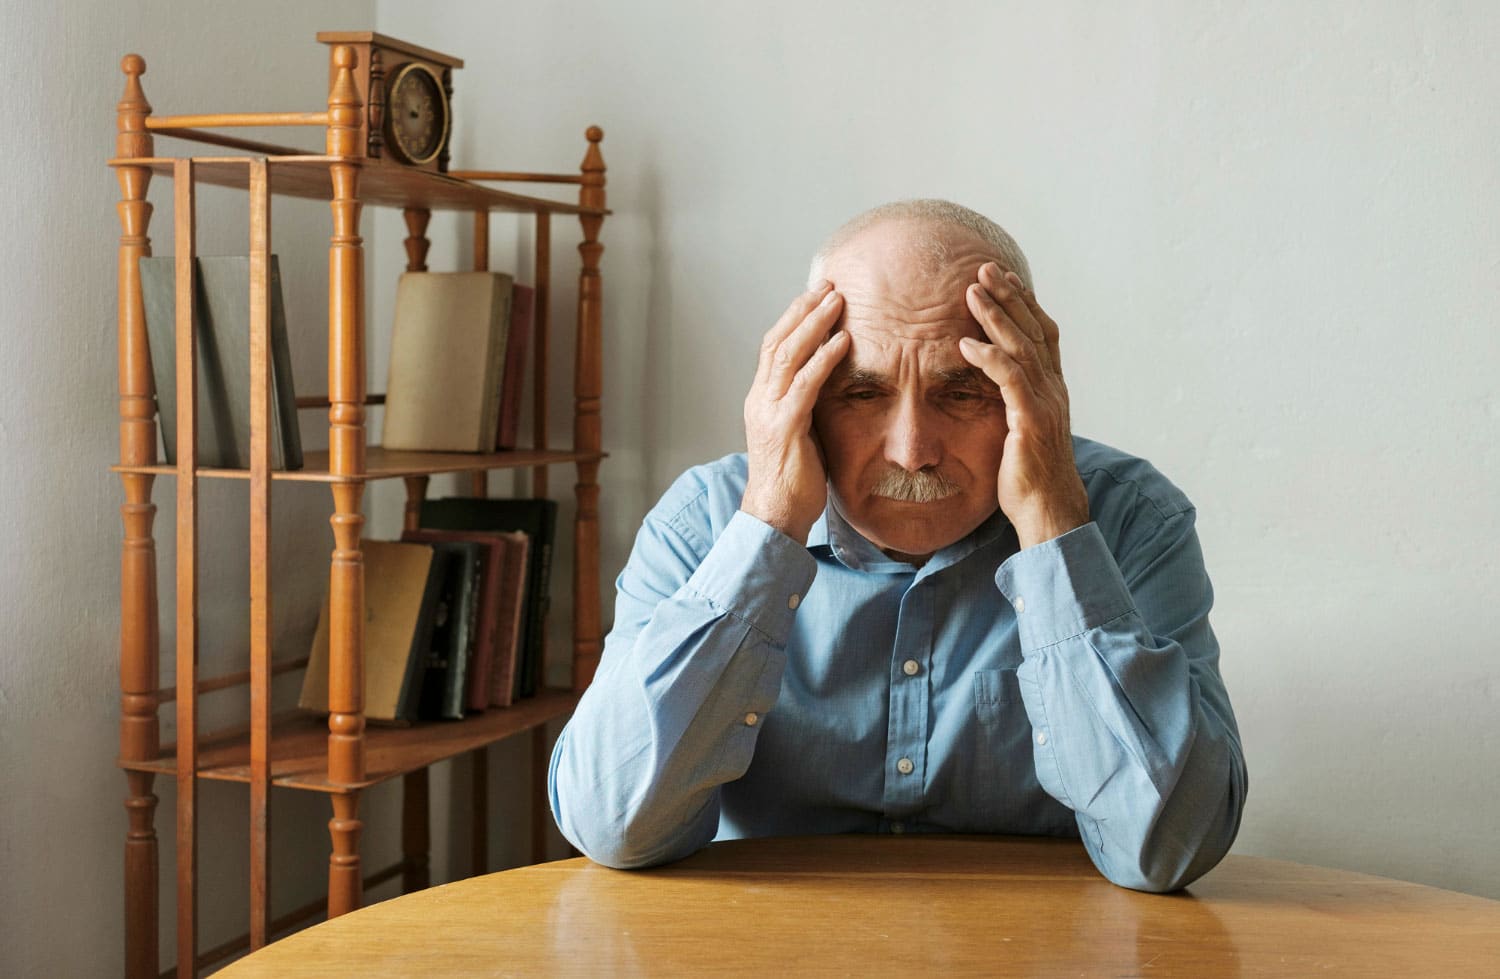 Image showing worried man